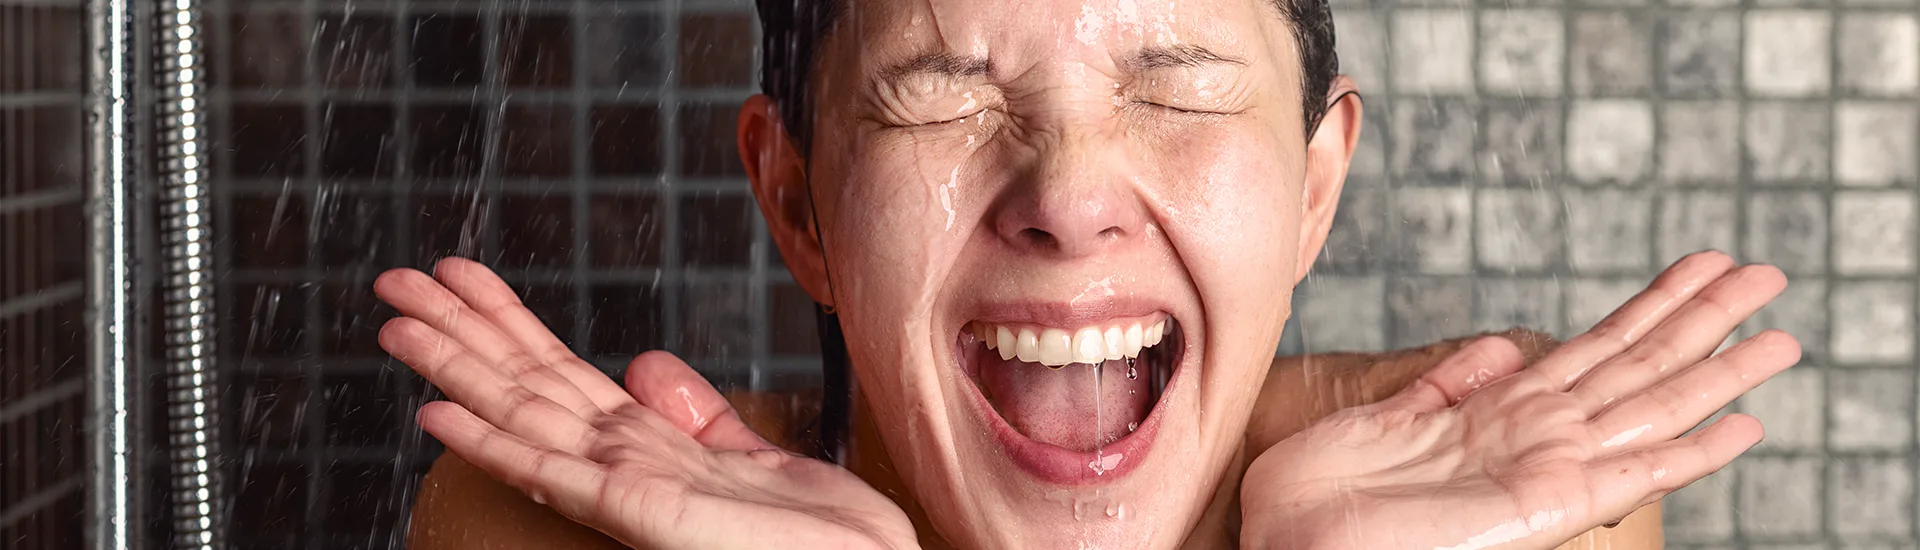 Mujer en la ducha asustada por la pérdida de cabello.